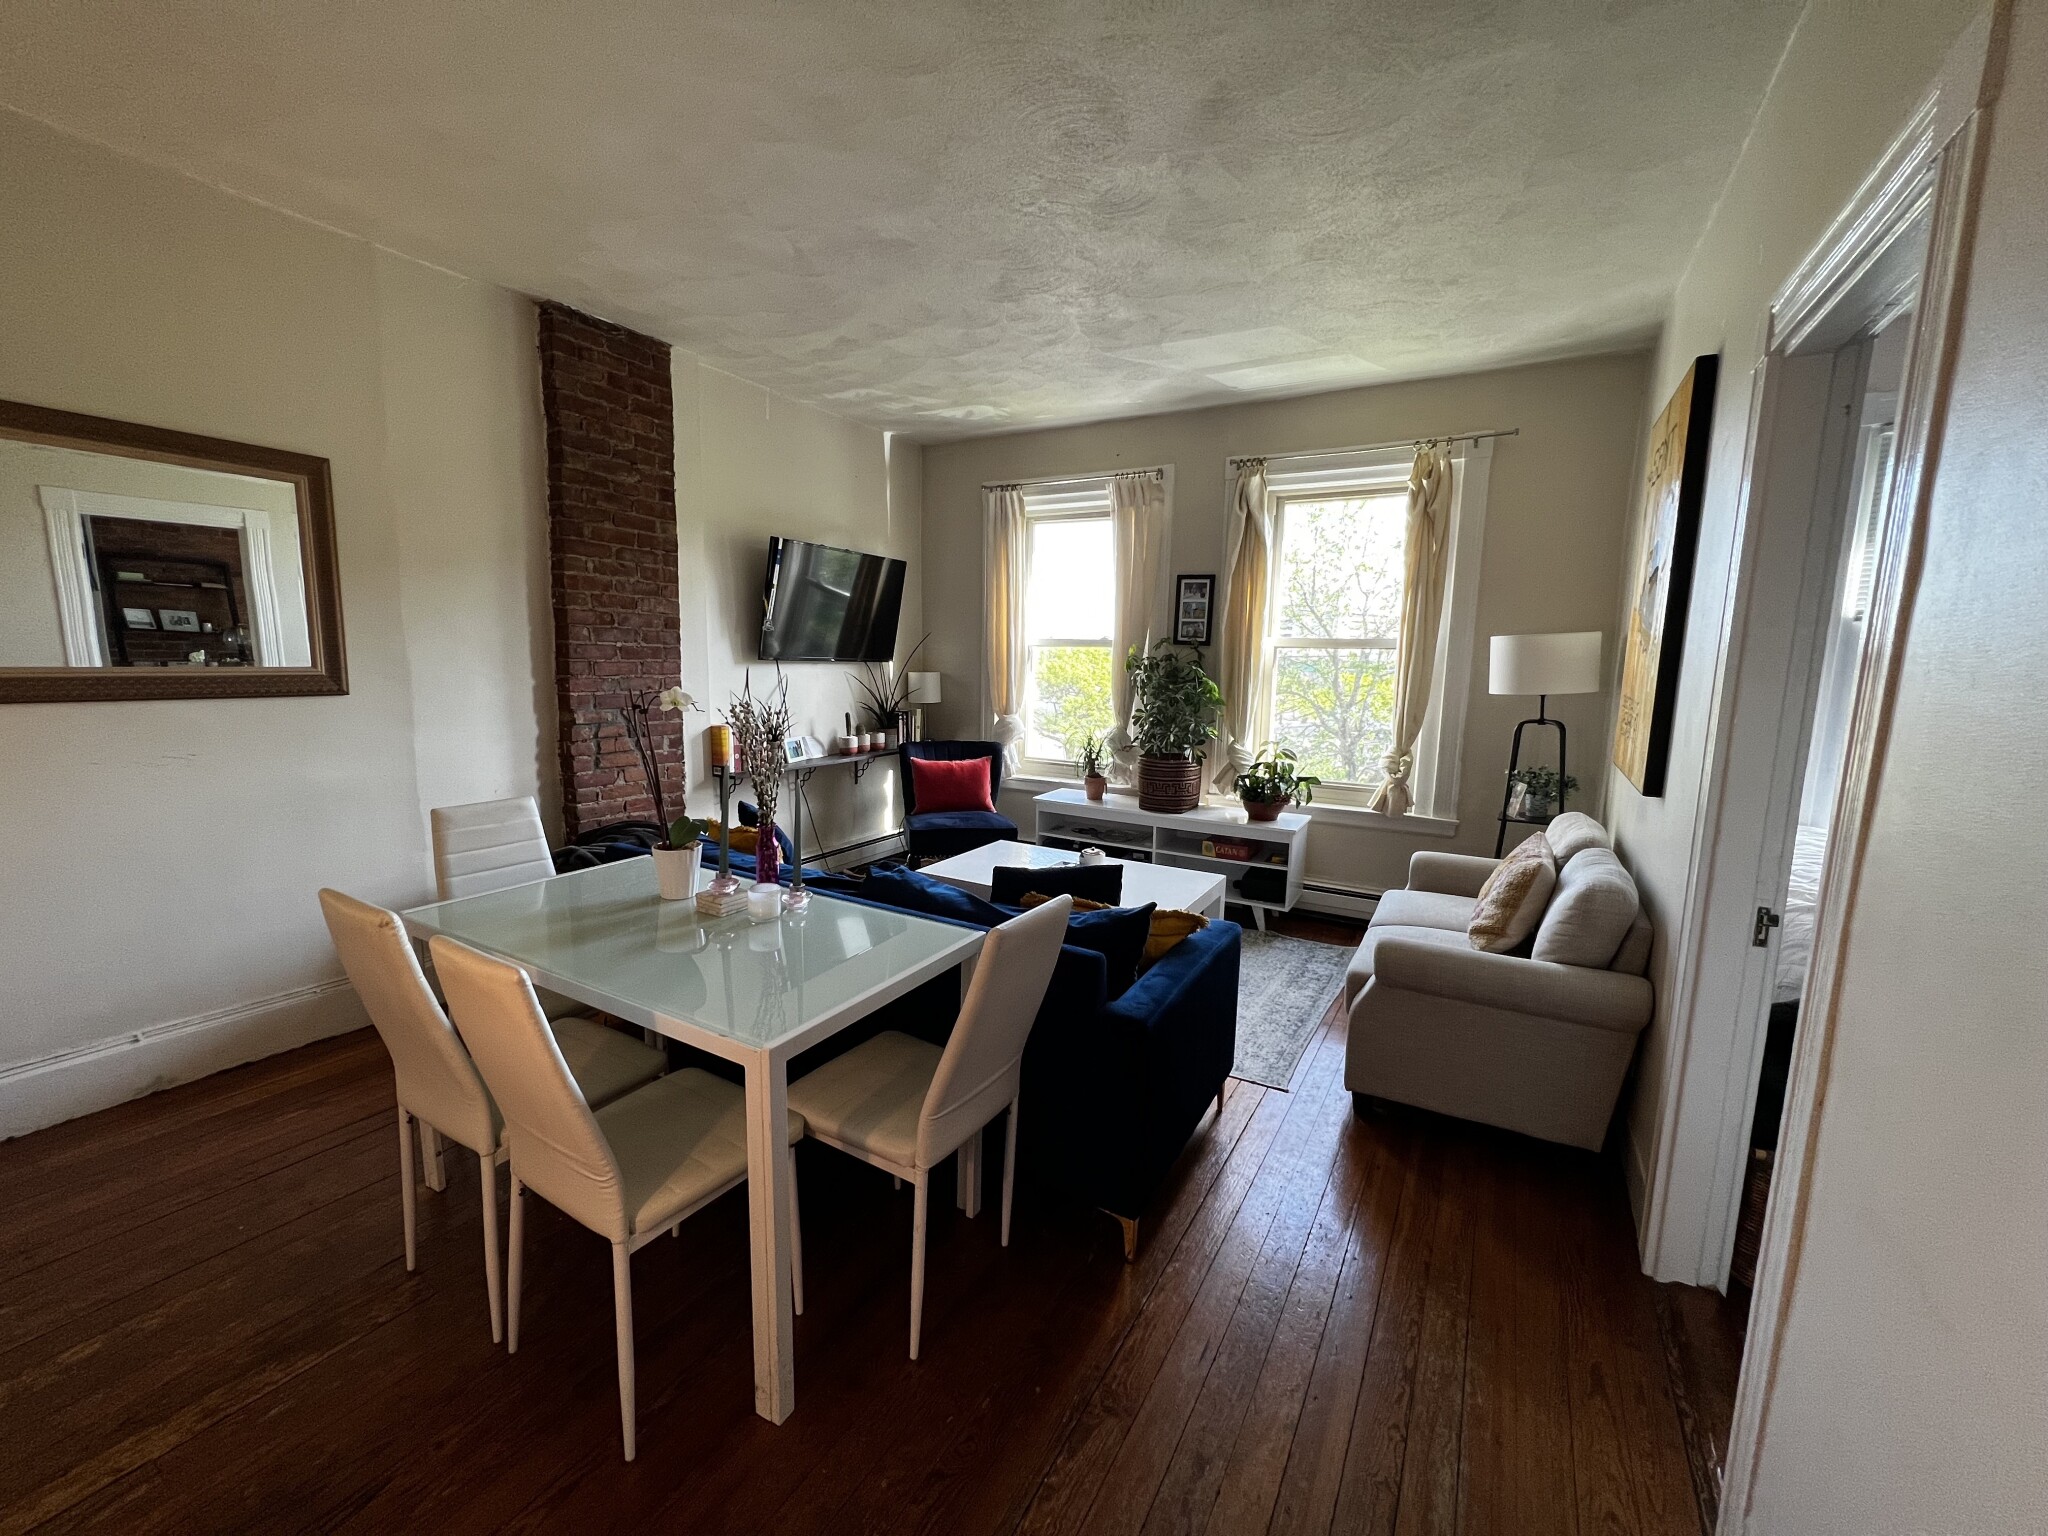 Photos of apartment on Savoy St.,Boston MA 02118